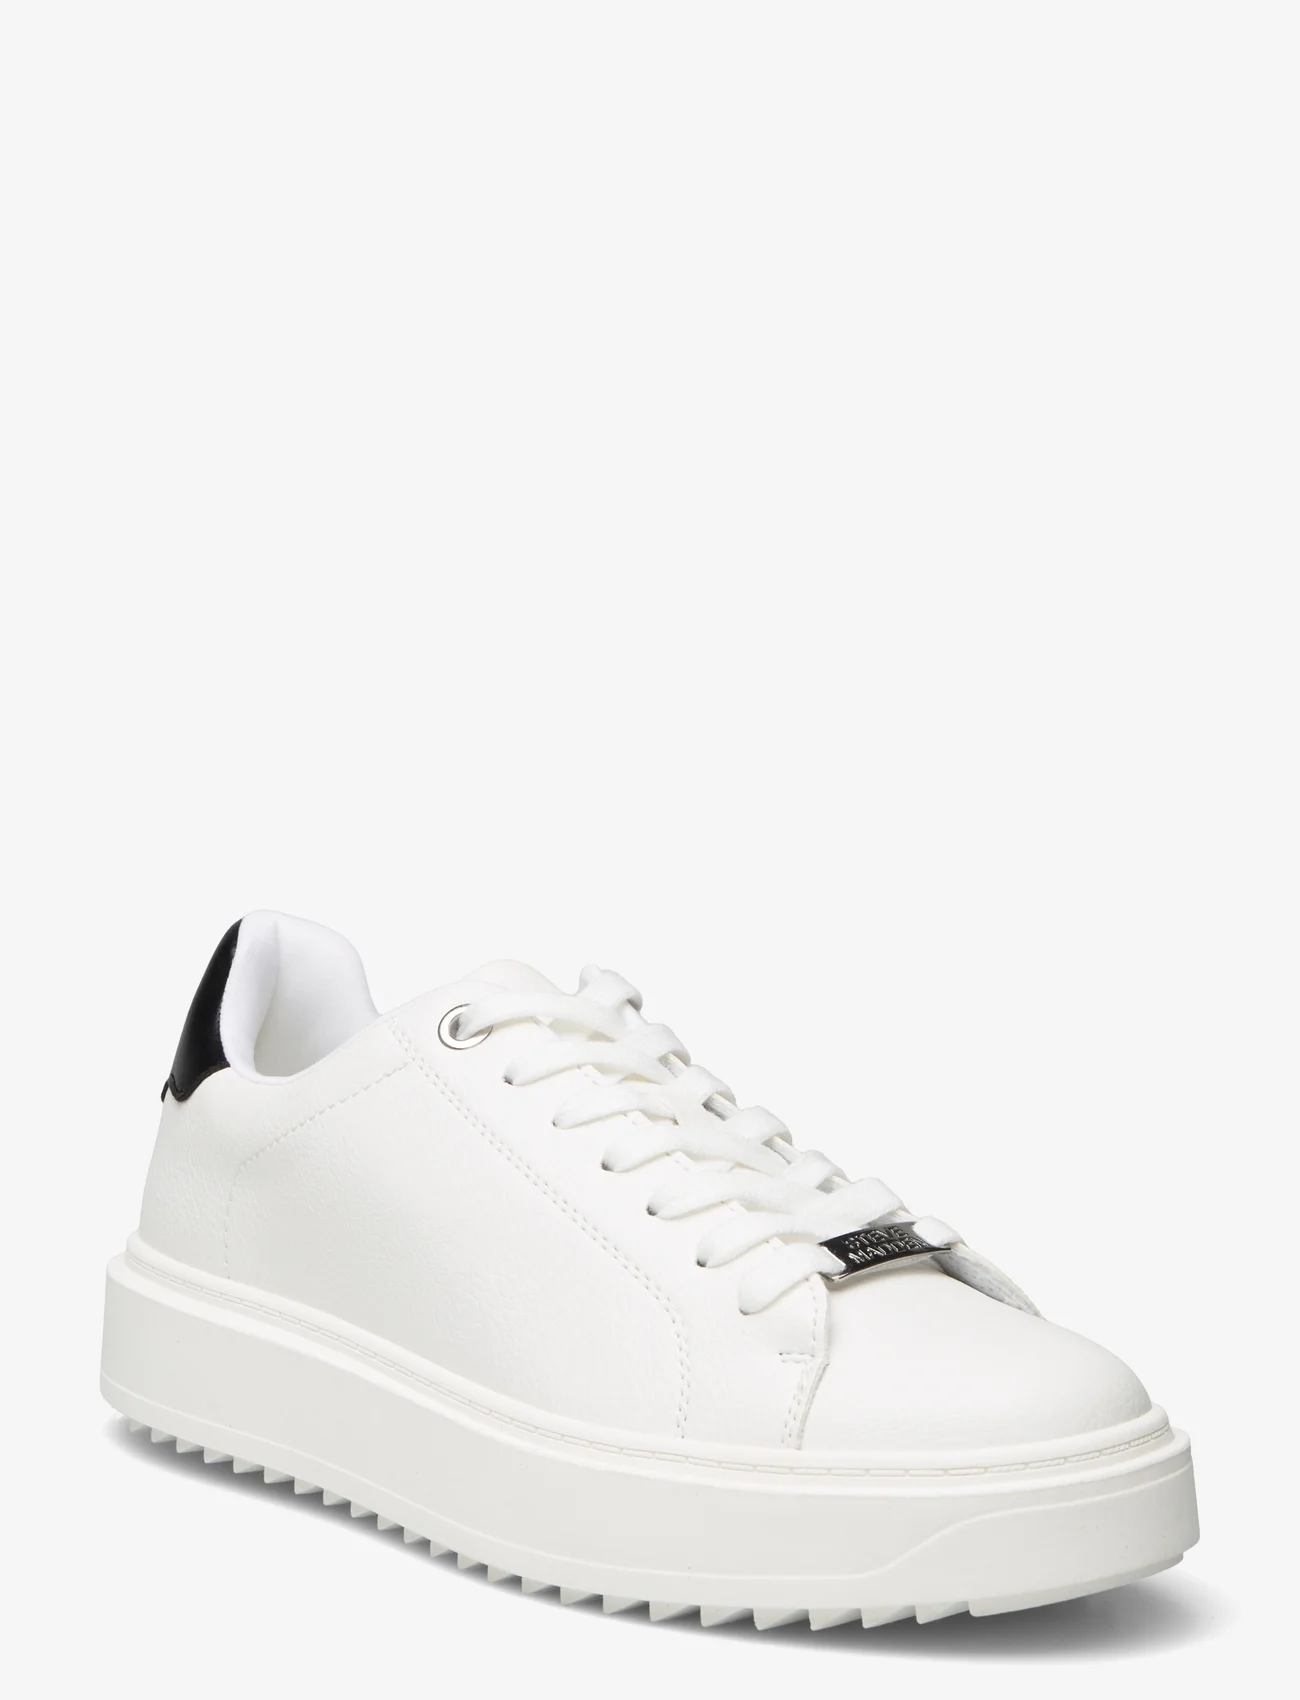 Steve Madden - Catcher Sneaker - niedrige sneakers - white black - 0